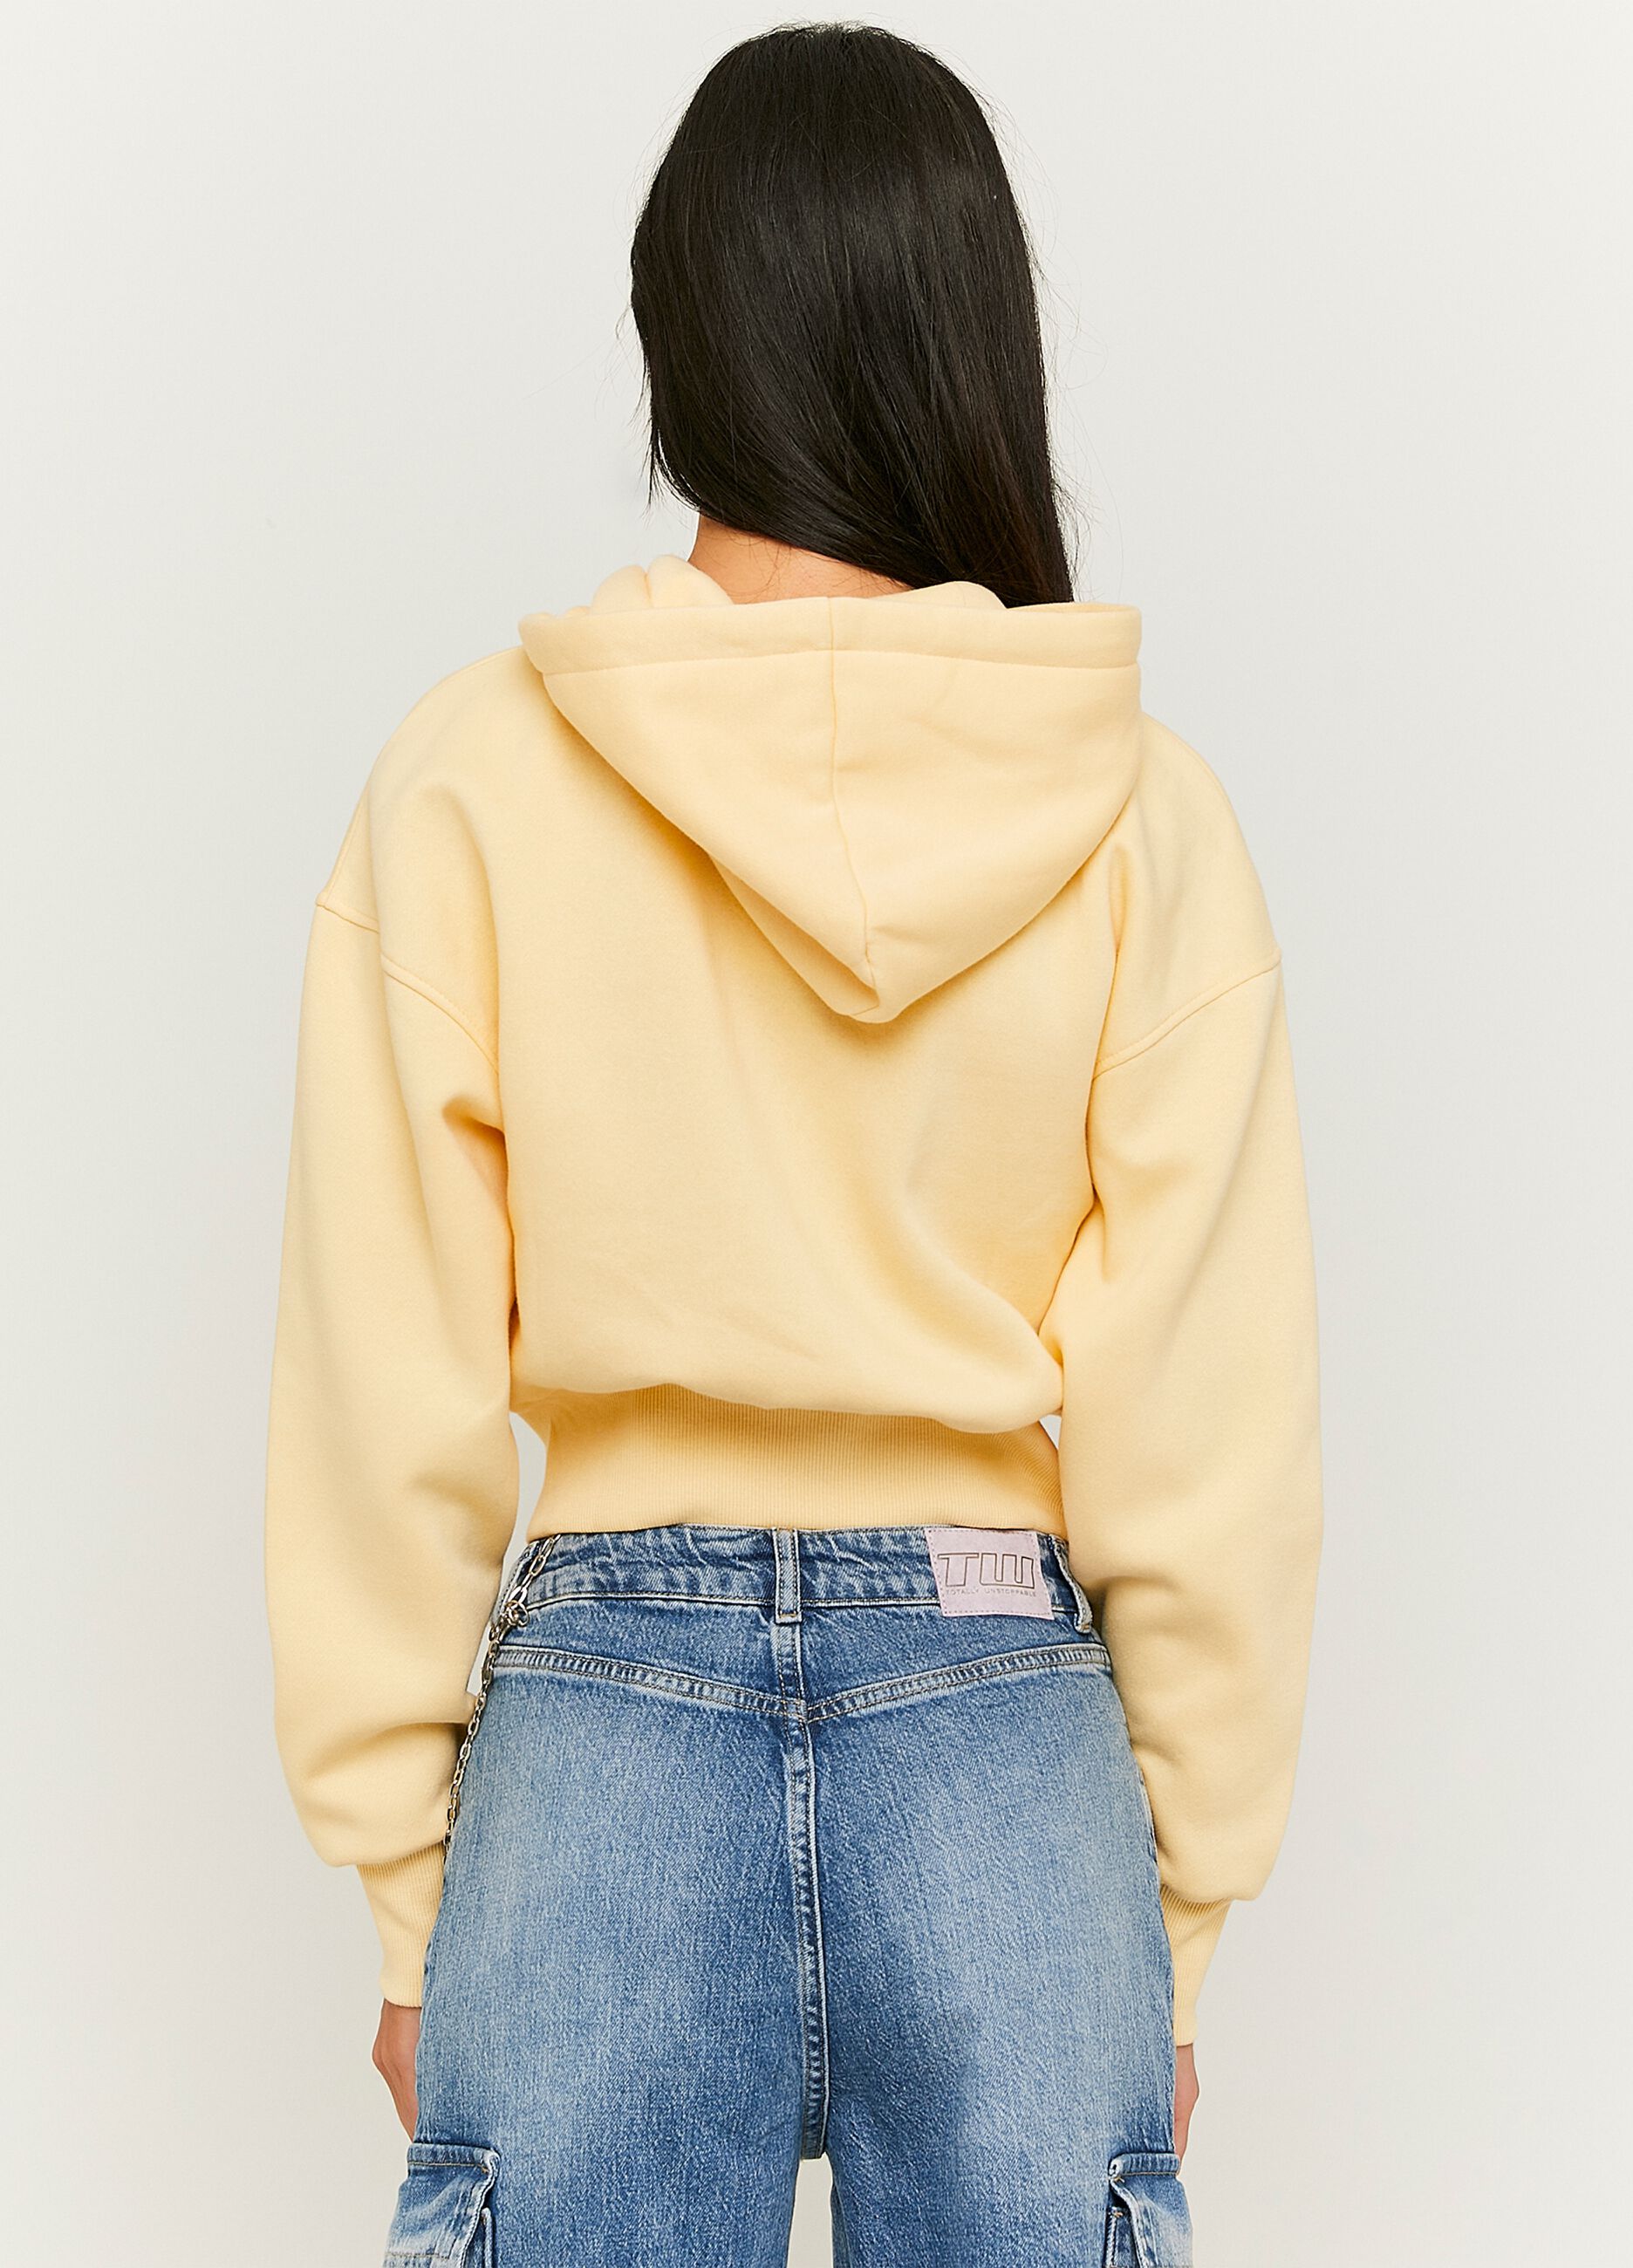 Crop sweatshirt with hood and zip